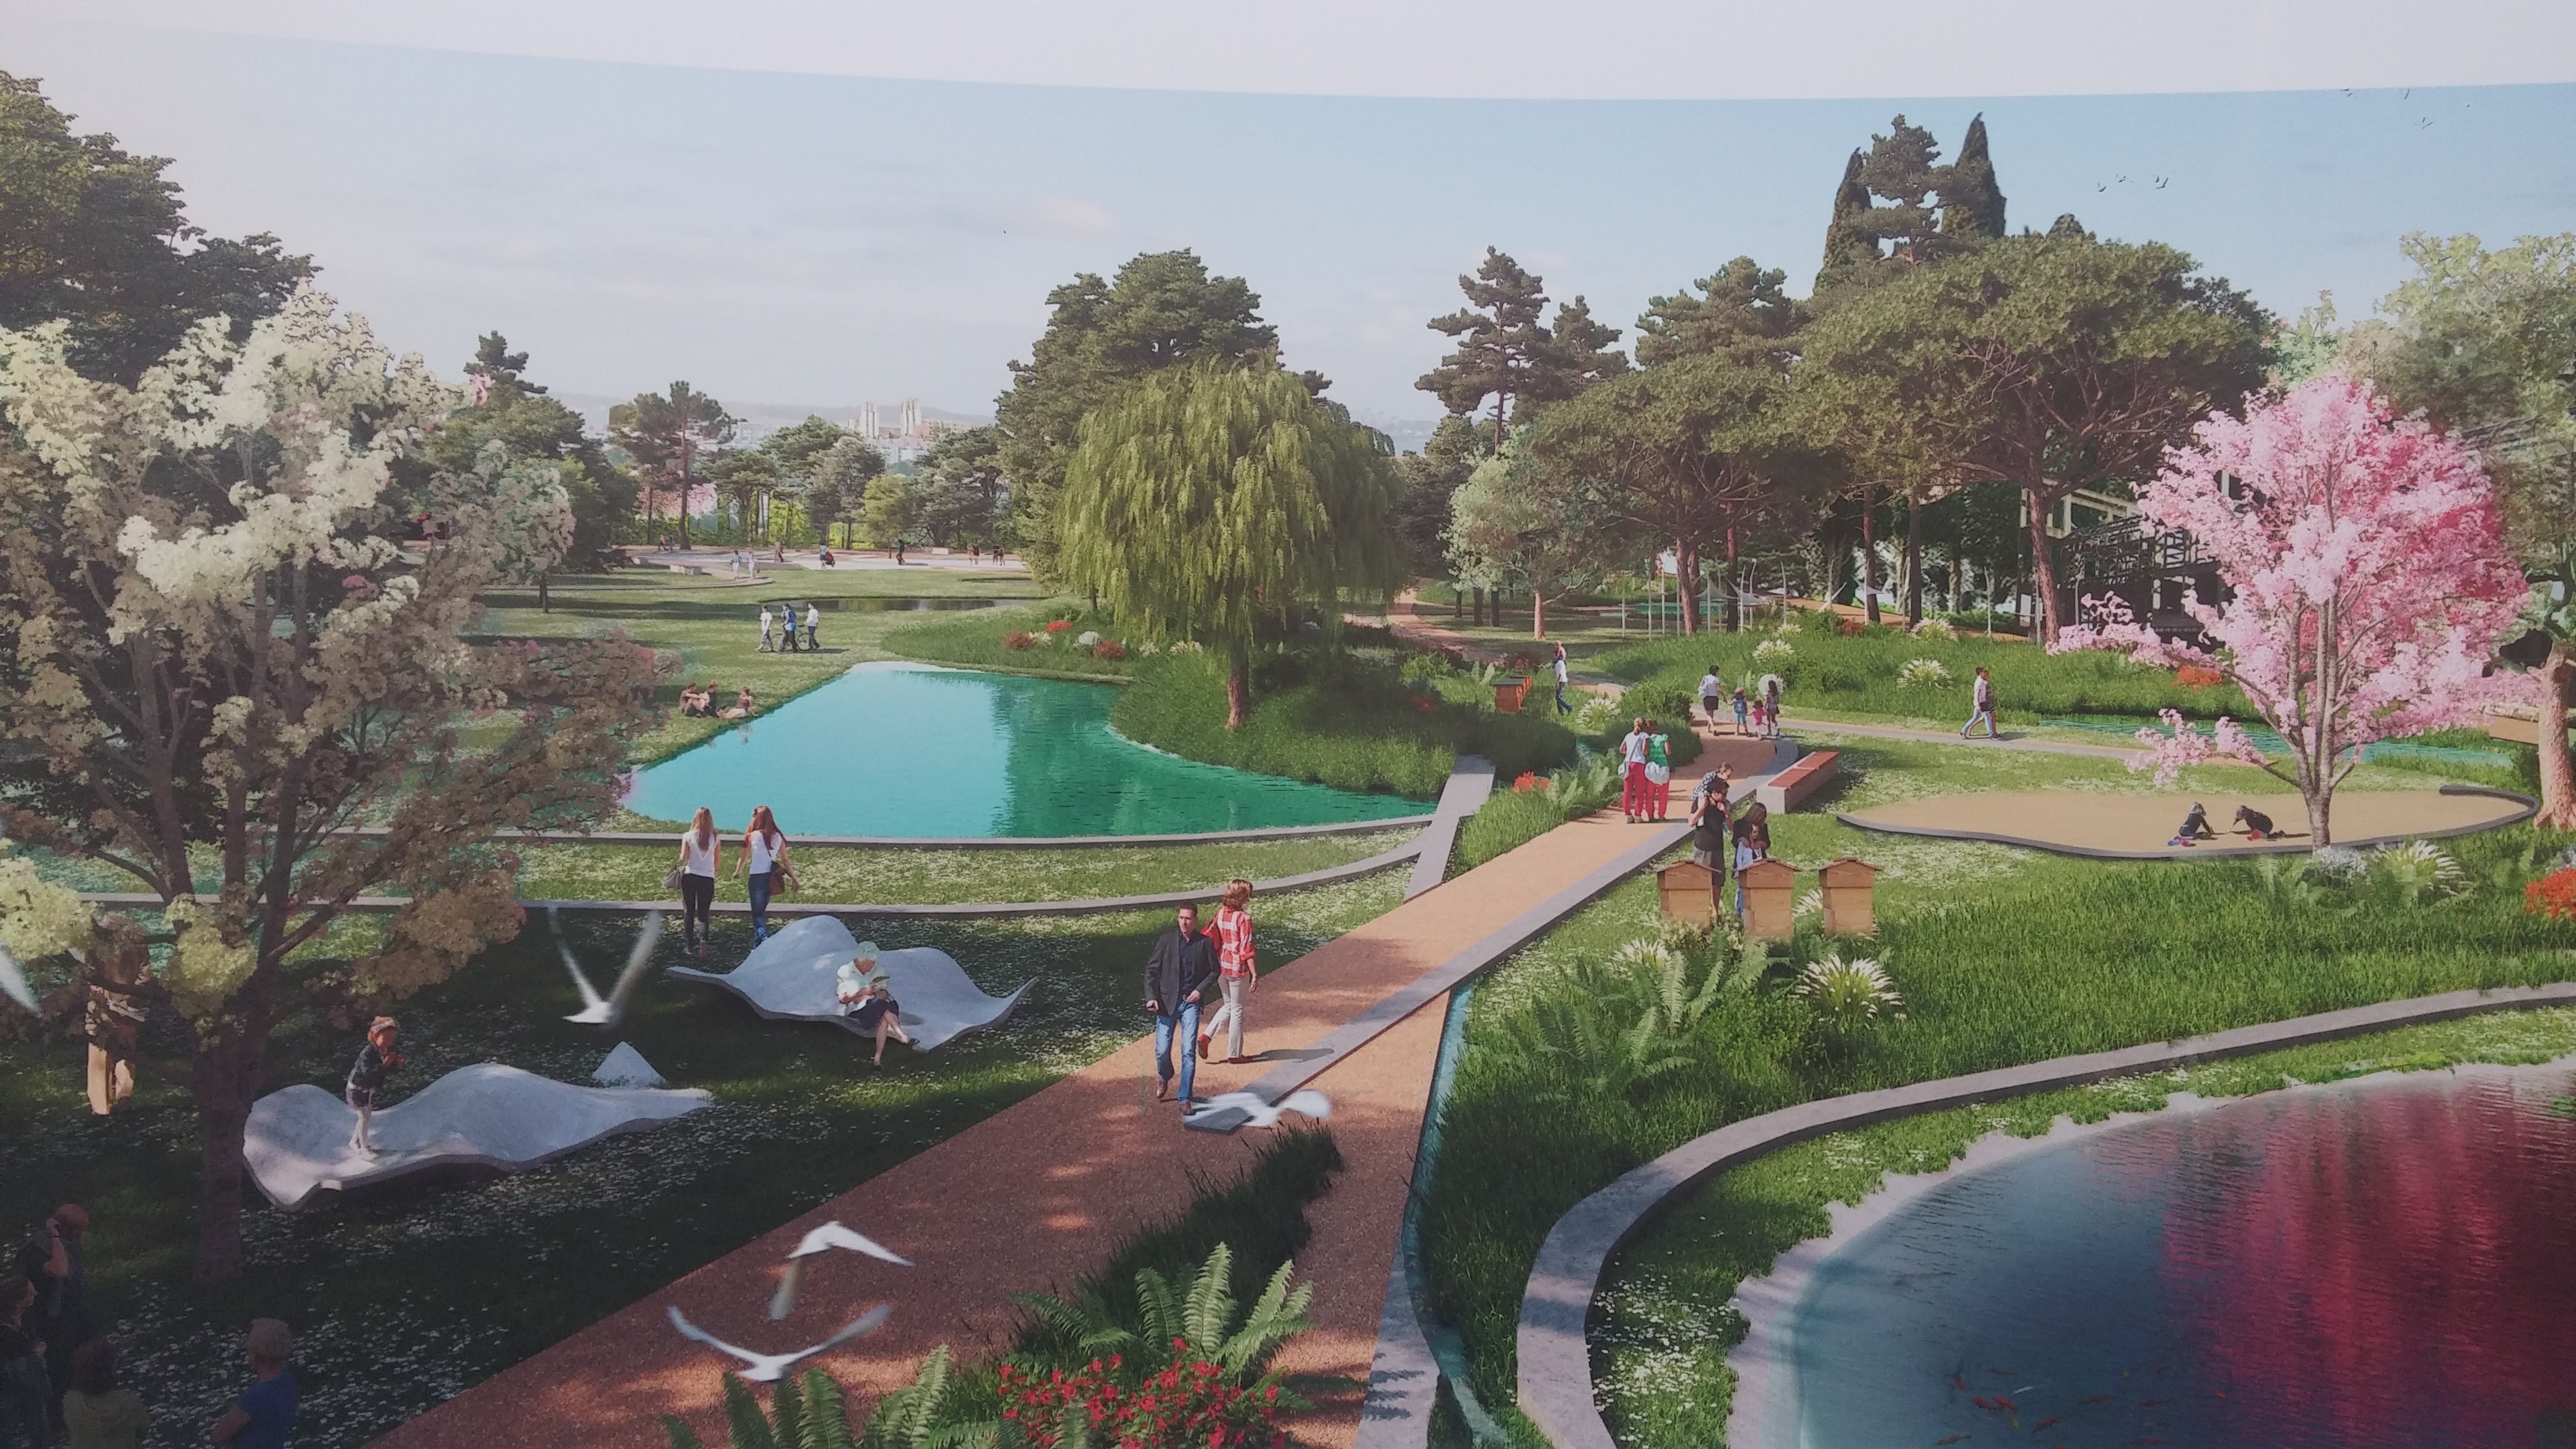 Al posto dello scalo San Cristoforo, il team Mecanoo propone uno scenario con un grande giardino botanico